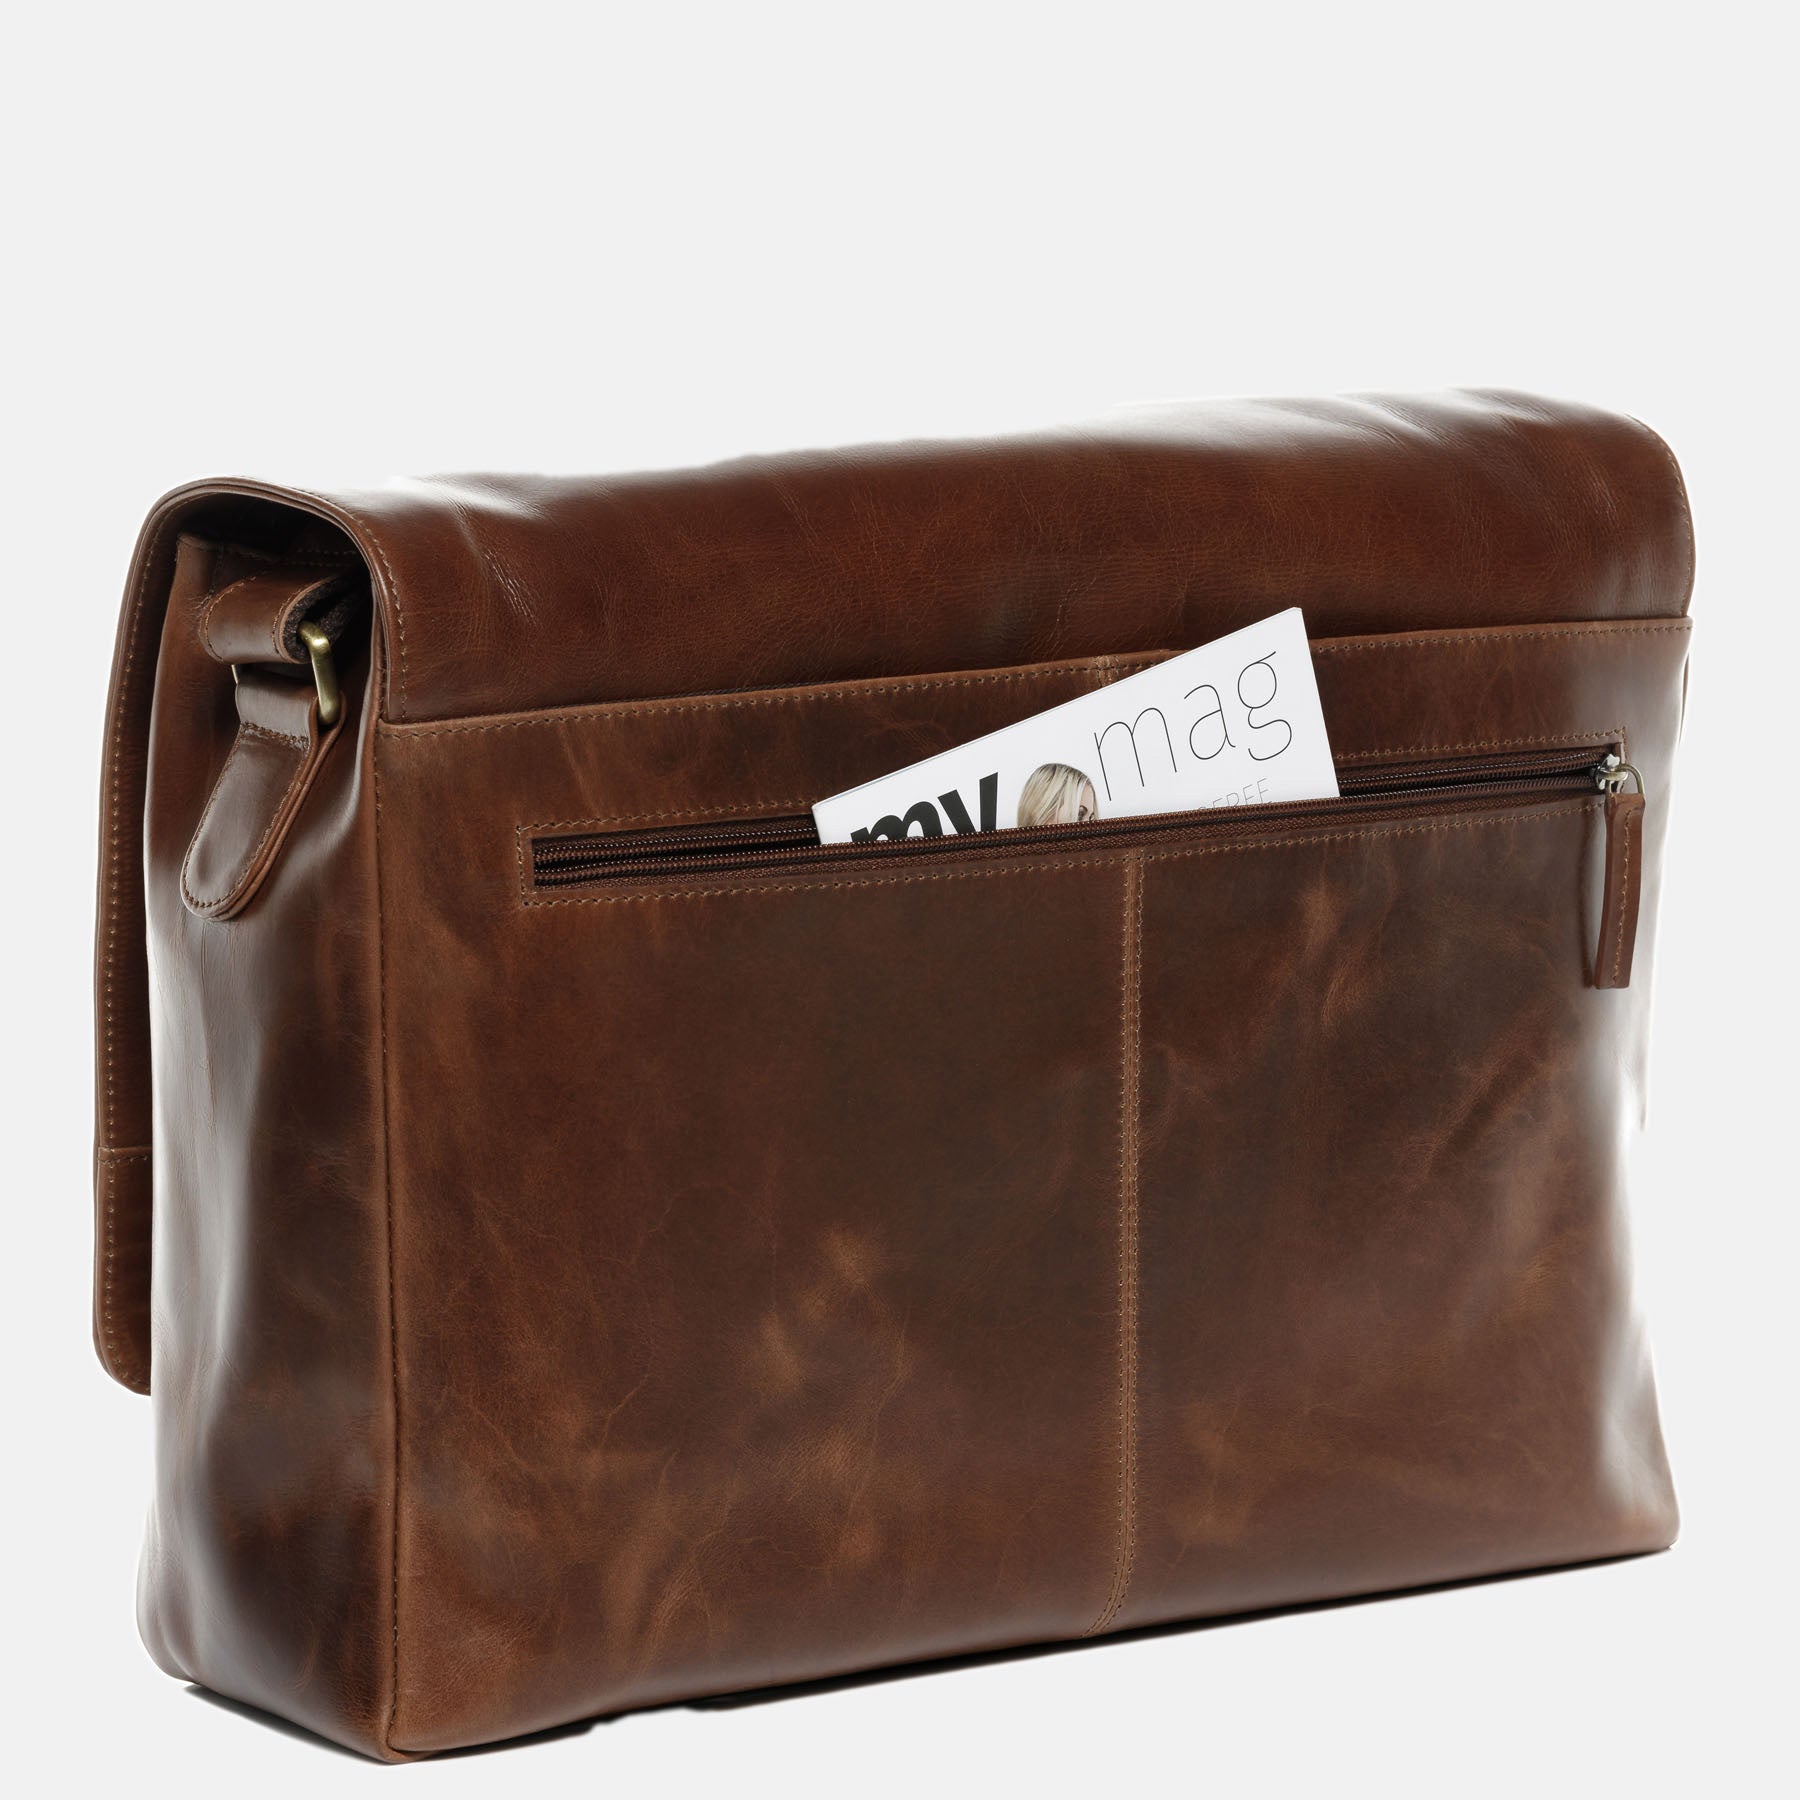 Messenger Bag SPENCER natural leather light brown